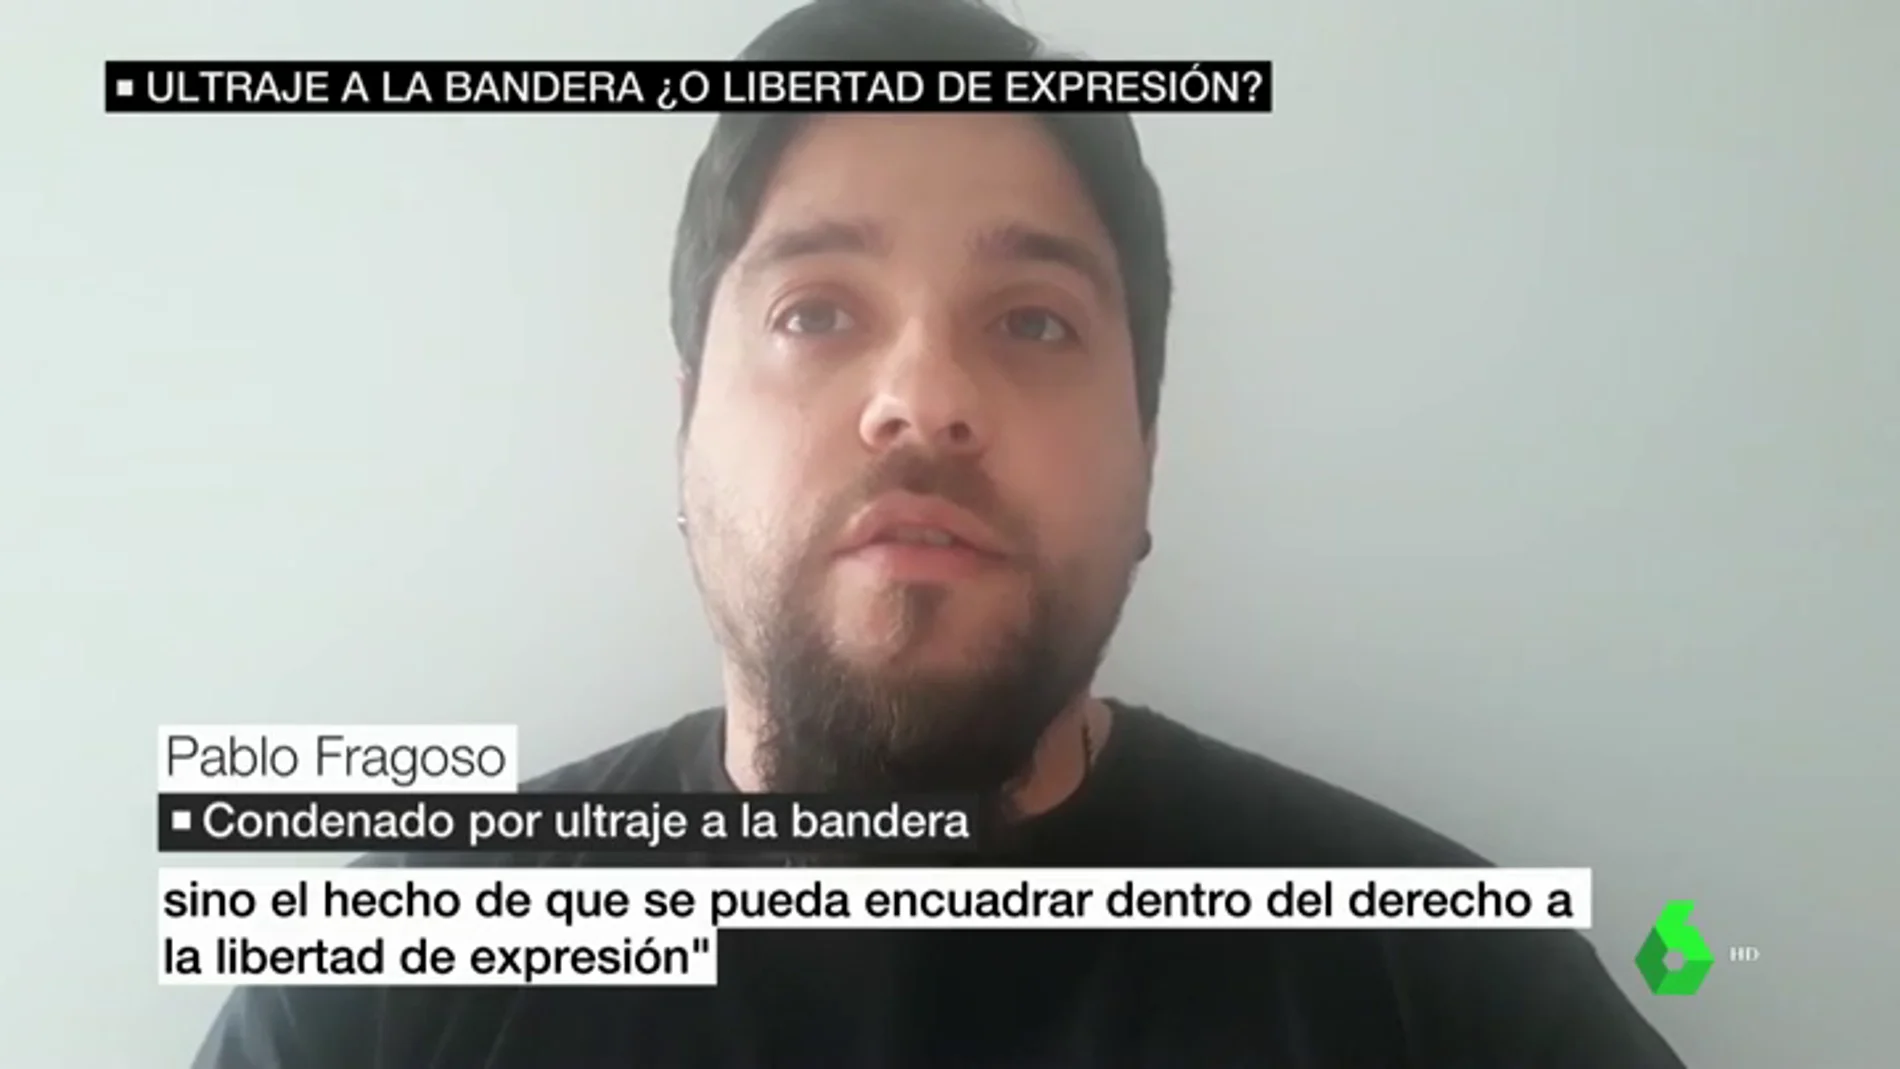 Habla Pablo Fragoso, condenado por pedir la quema de la bandera de España en una protesta: "Nunca pronuncié esas palabras"